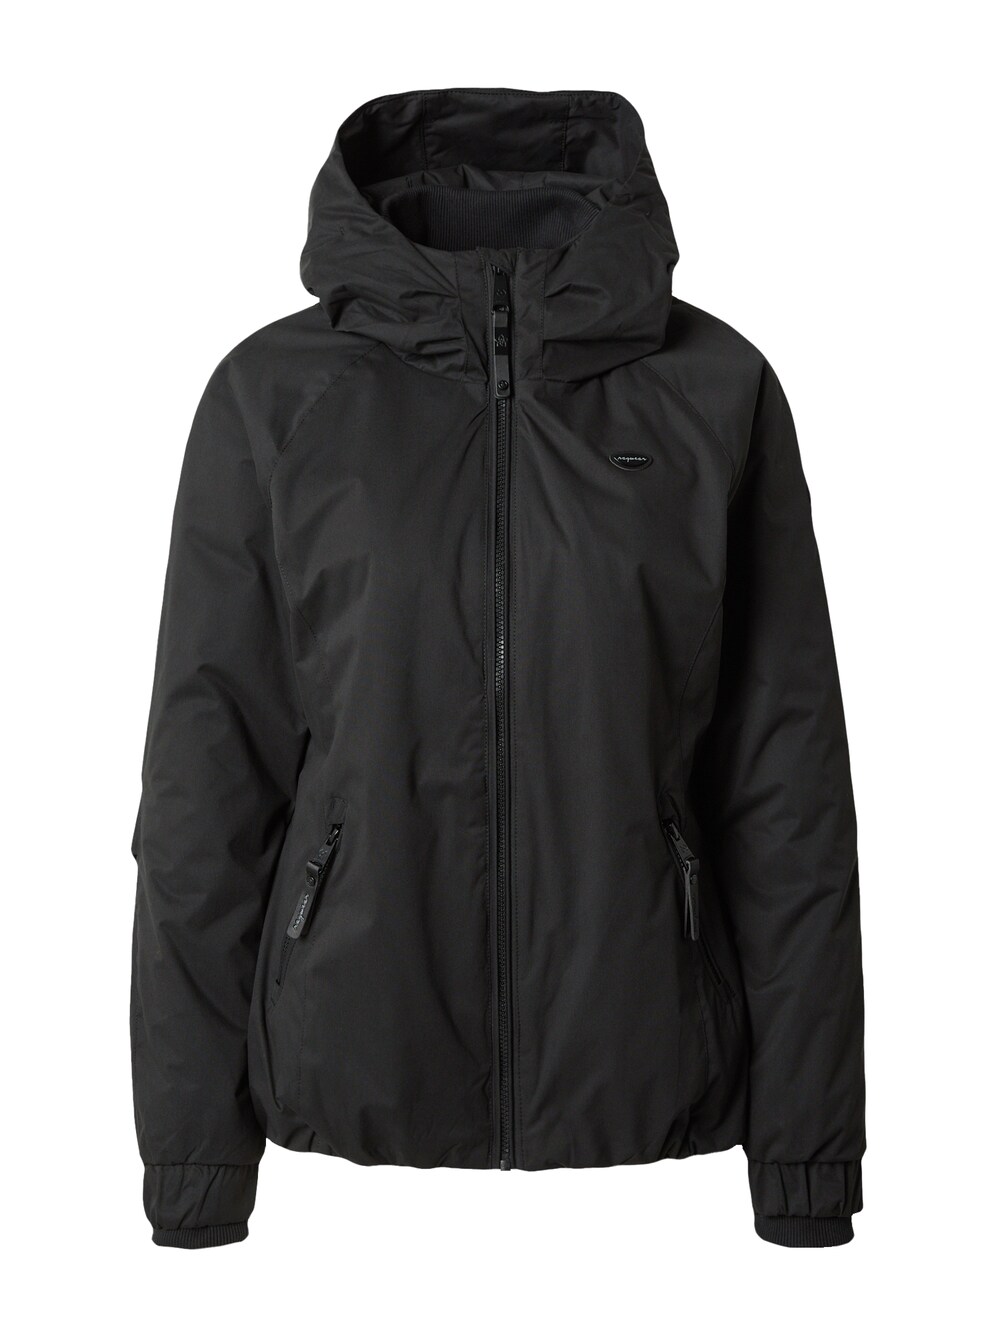 Межсезонная куртка Ragwear DIZZIE, черный межсезонная куртка ragwear margge оливковый